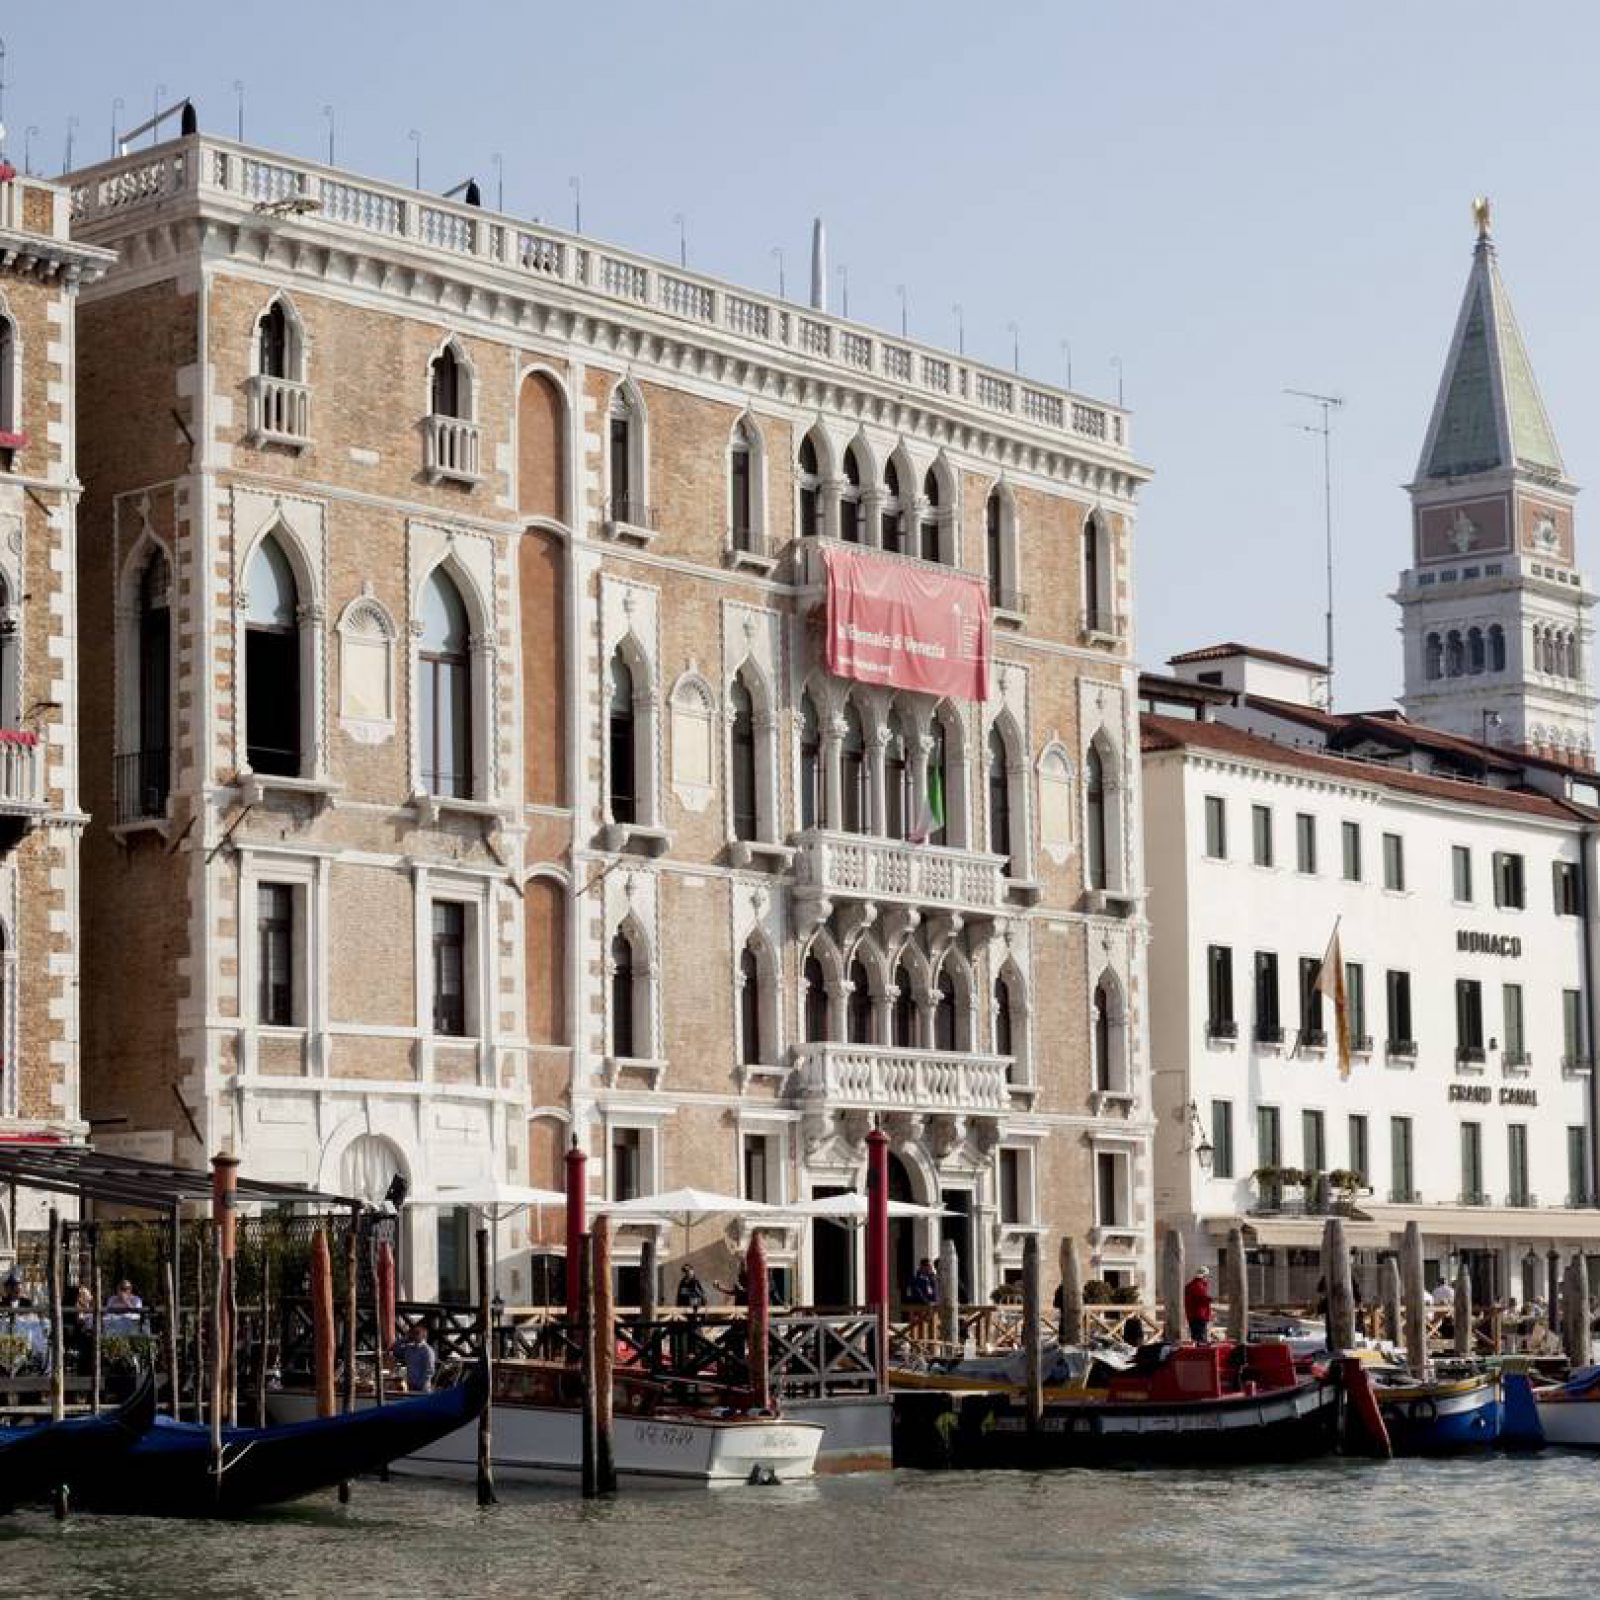 Ca’ Giustinian, sede central de la Bienal de Venecia (vista exterior), 2010. Foto: Giulio Squillacciotti. Cortesía: Bienal de Venecia